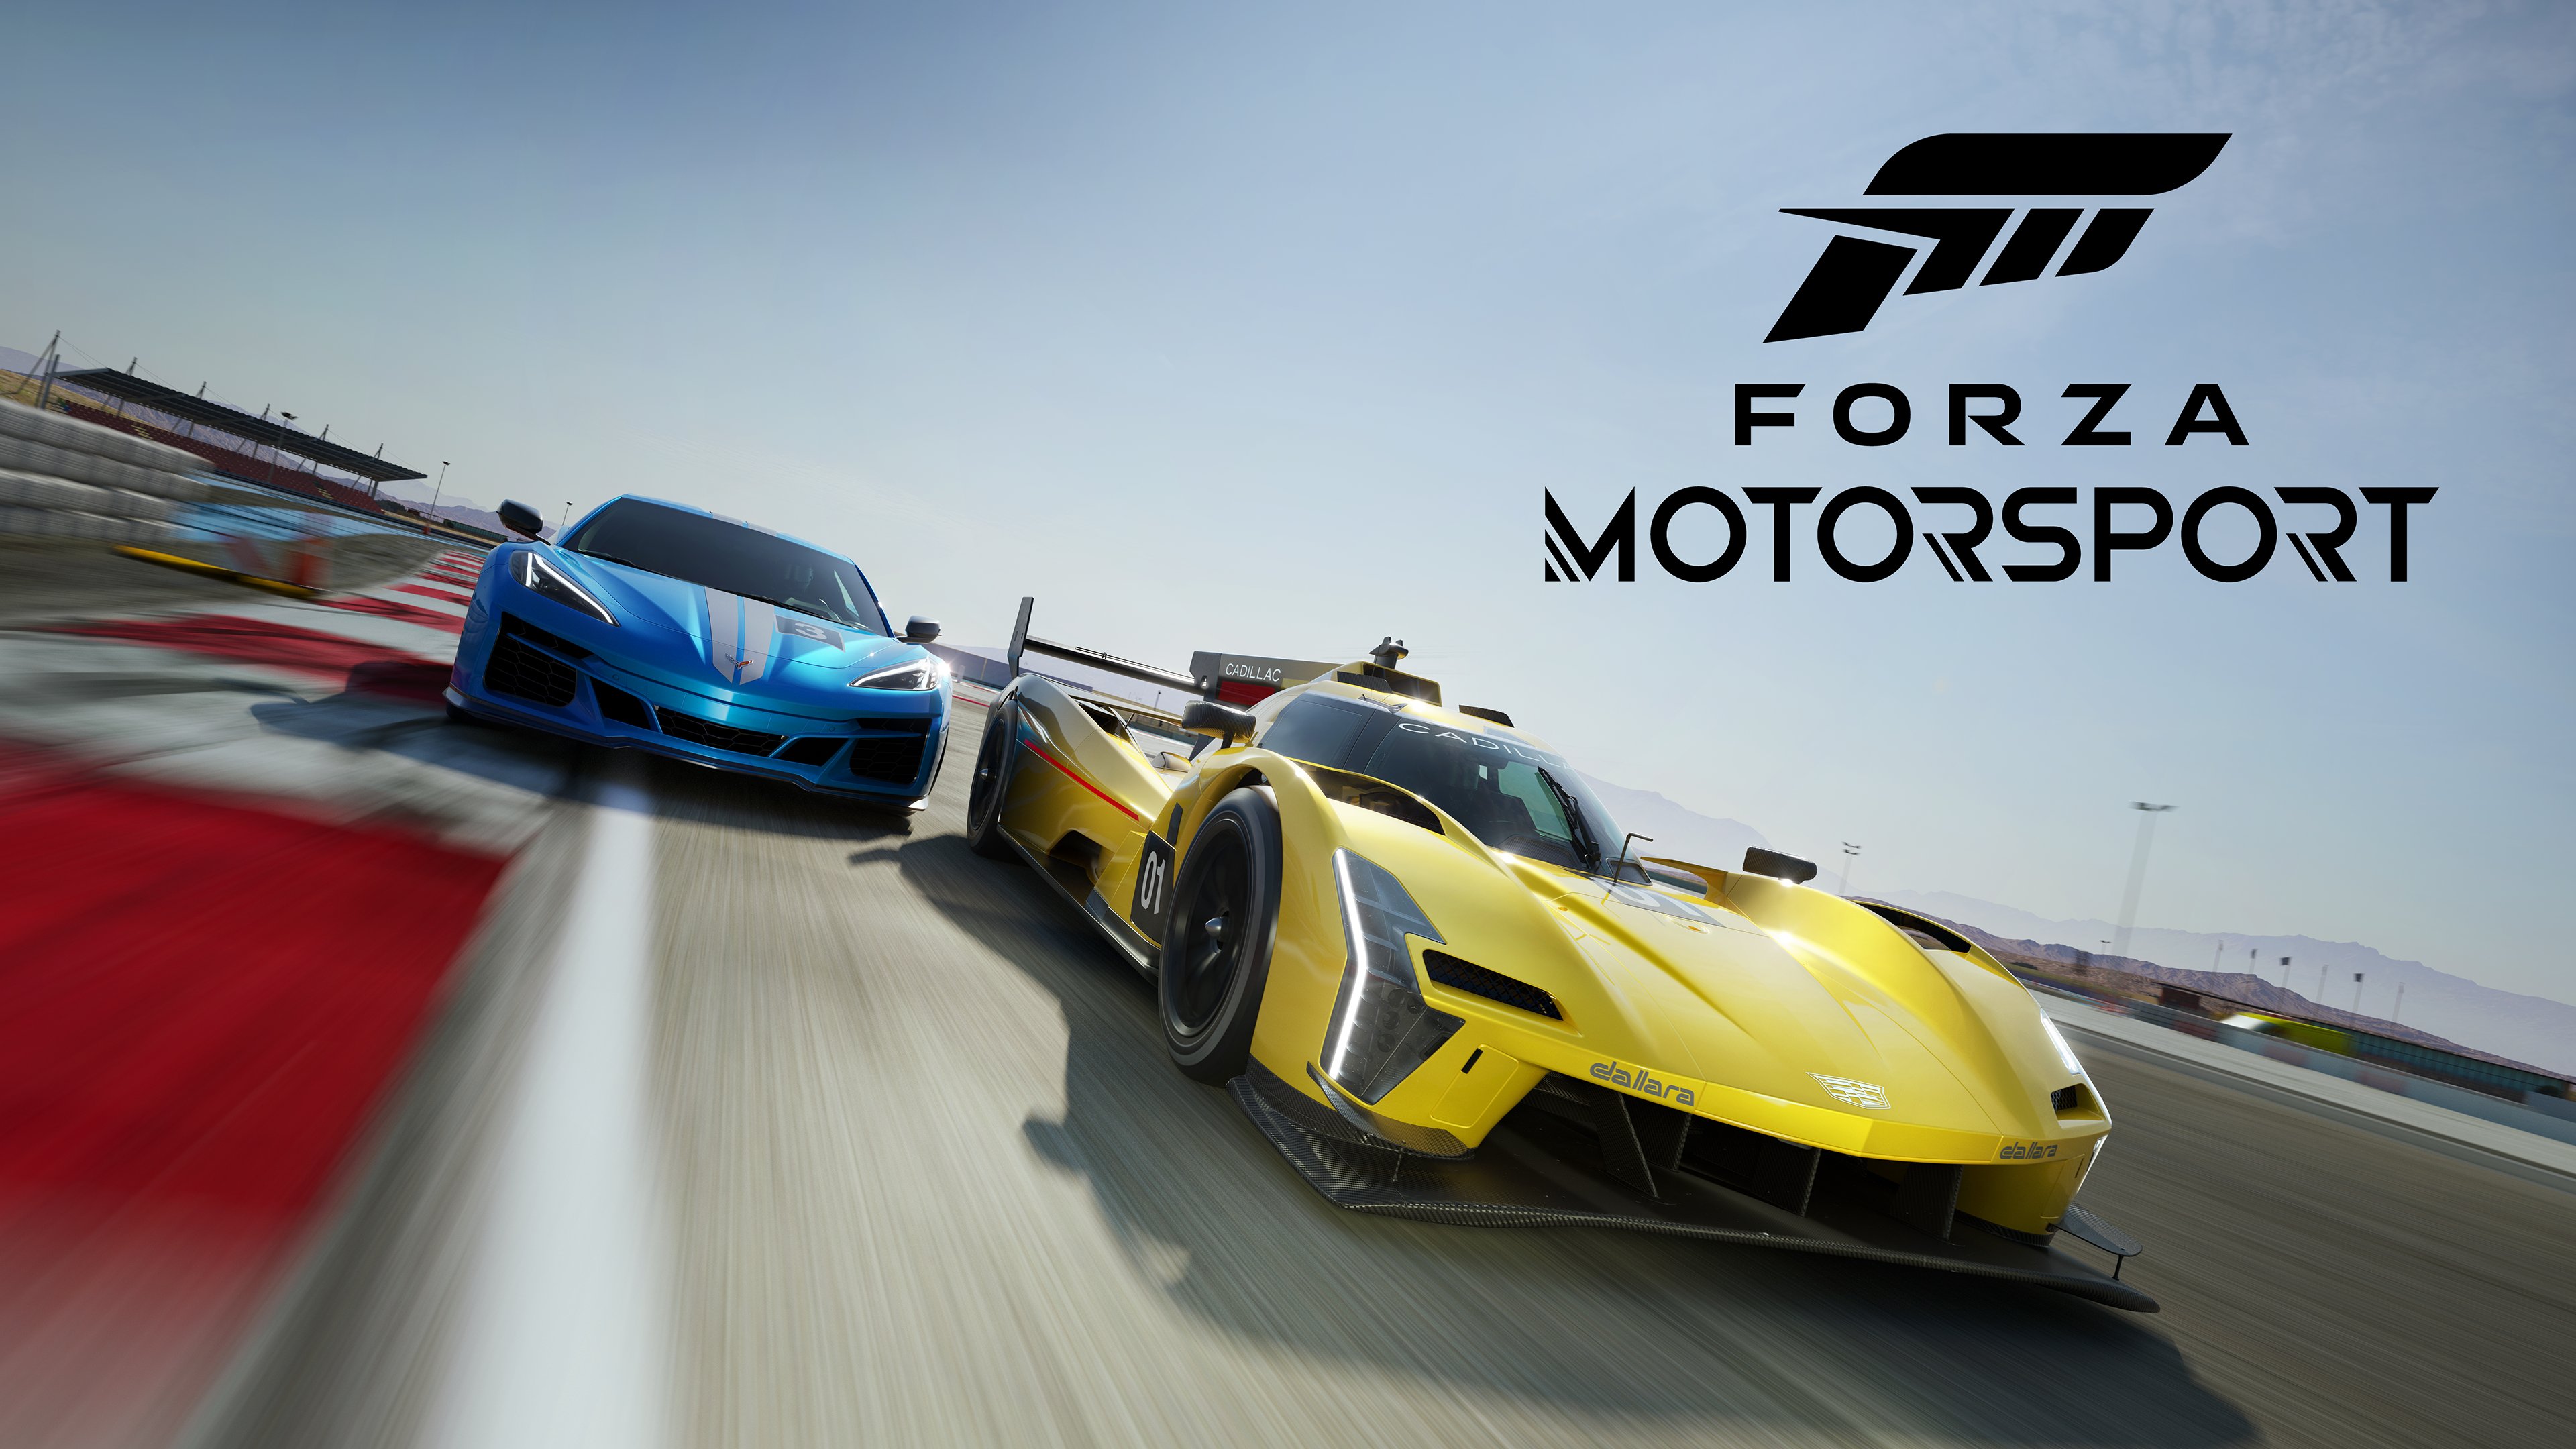 Forza Motorsport: la copertina del gioco è ufficiale e in arrivo il singleplayer!  |  Xbox One